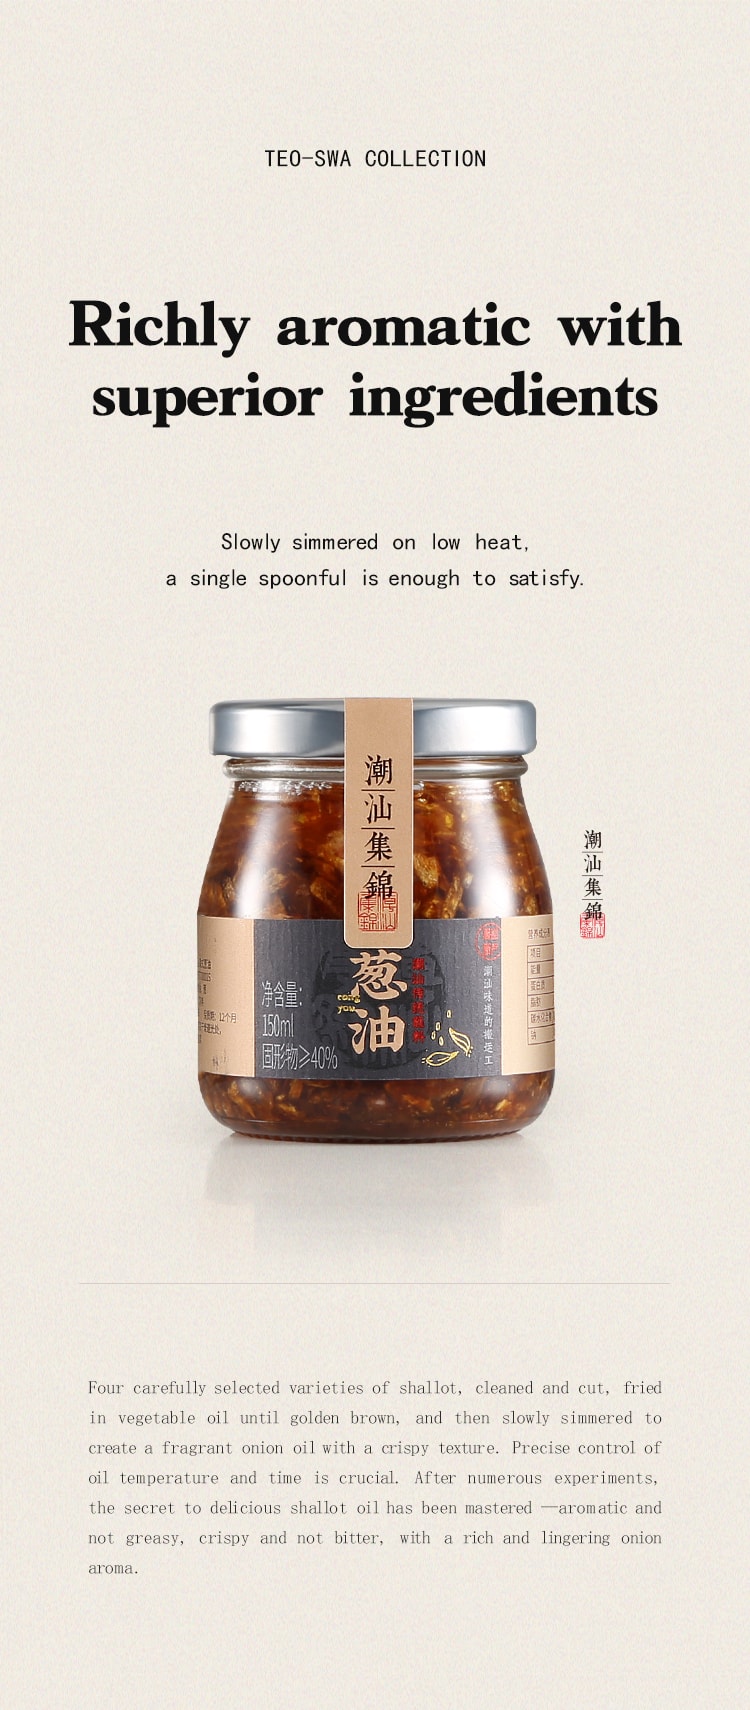 中国潮汕集锦 3件套装 蒜头油 葱油 蒜头酥 375克